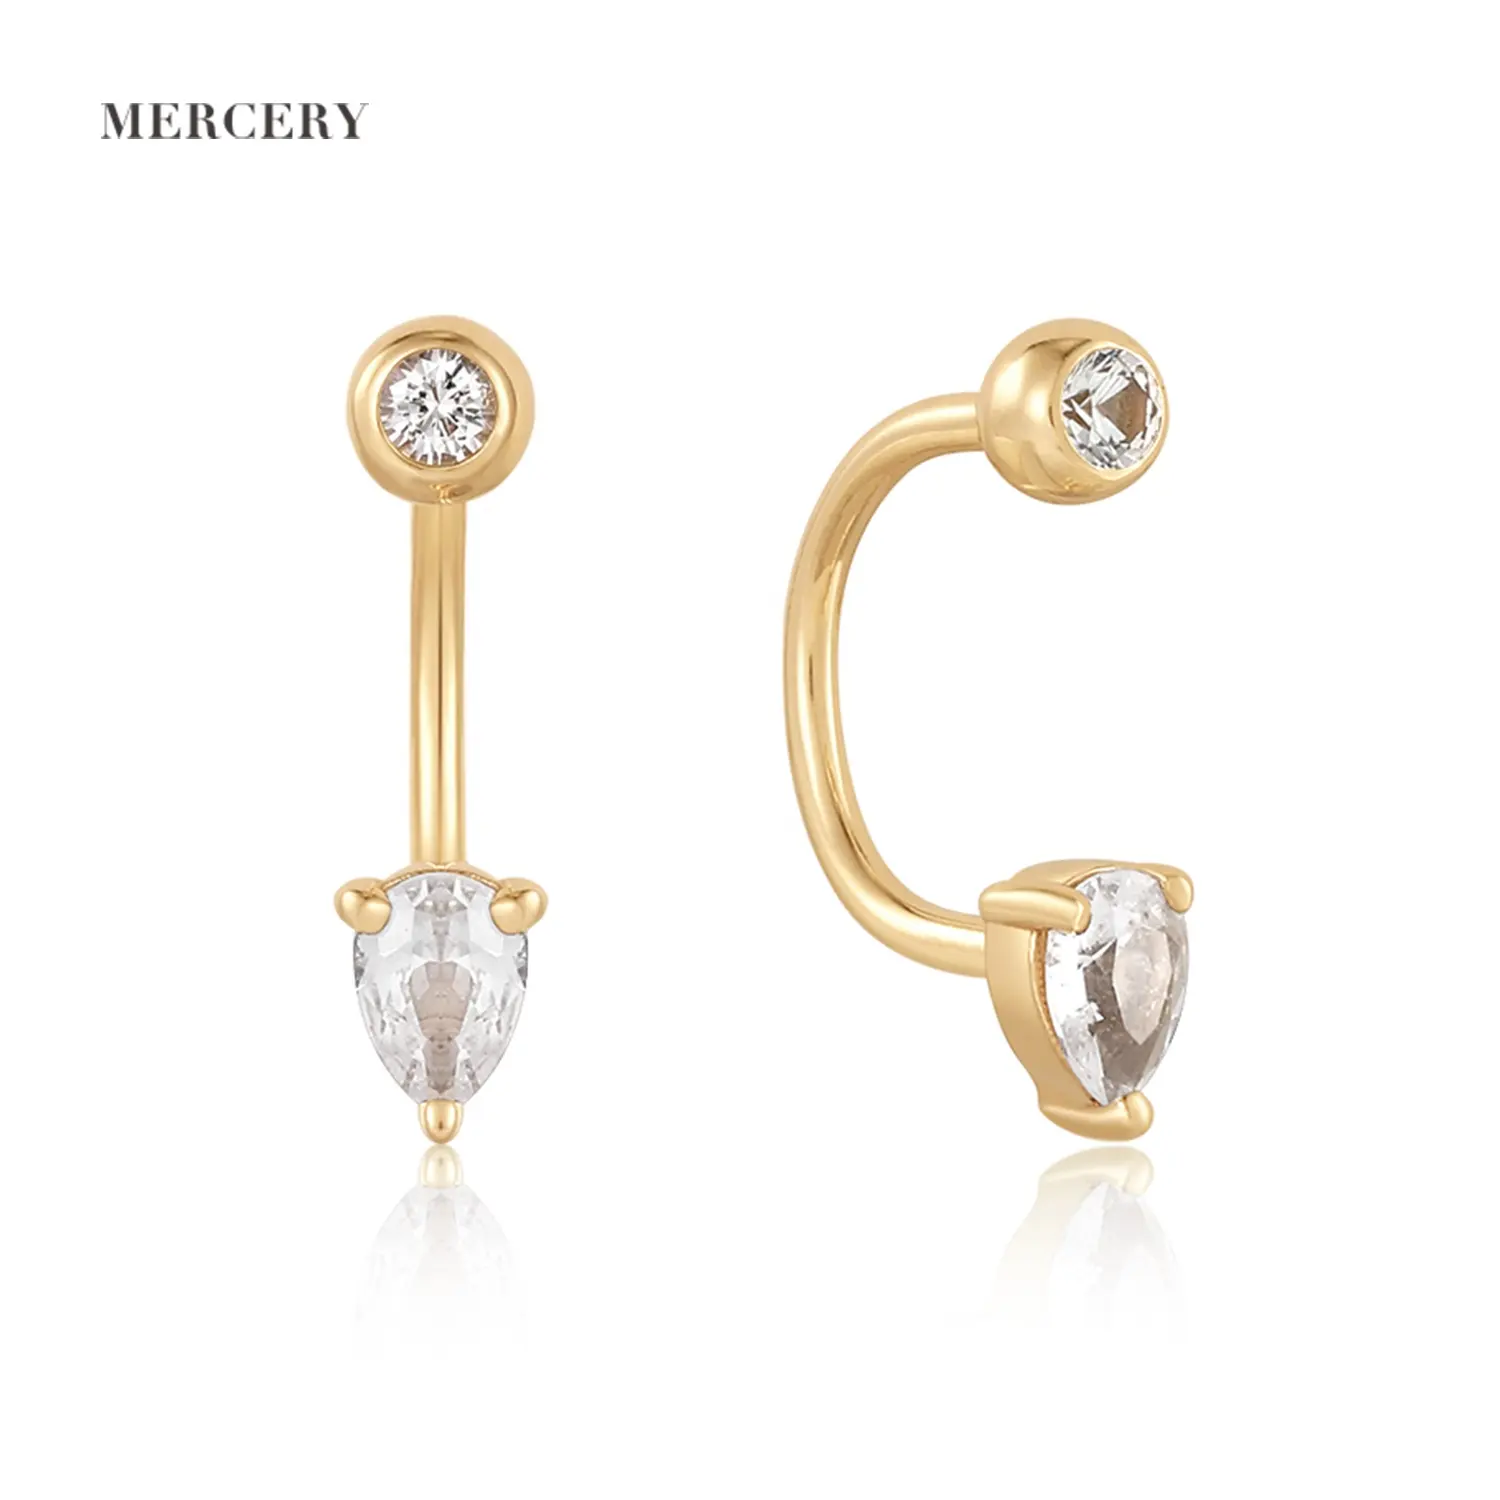 Mercery bijoux personnalisés exquis polyvalent 14k or massif Tragus Cartilage Helix boucles d'oreilles clous saphir bijoux de piercing corporel